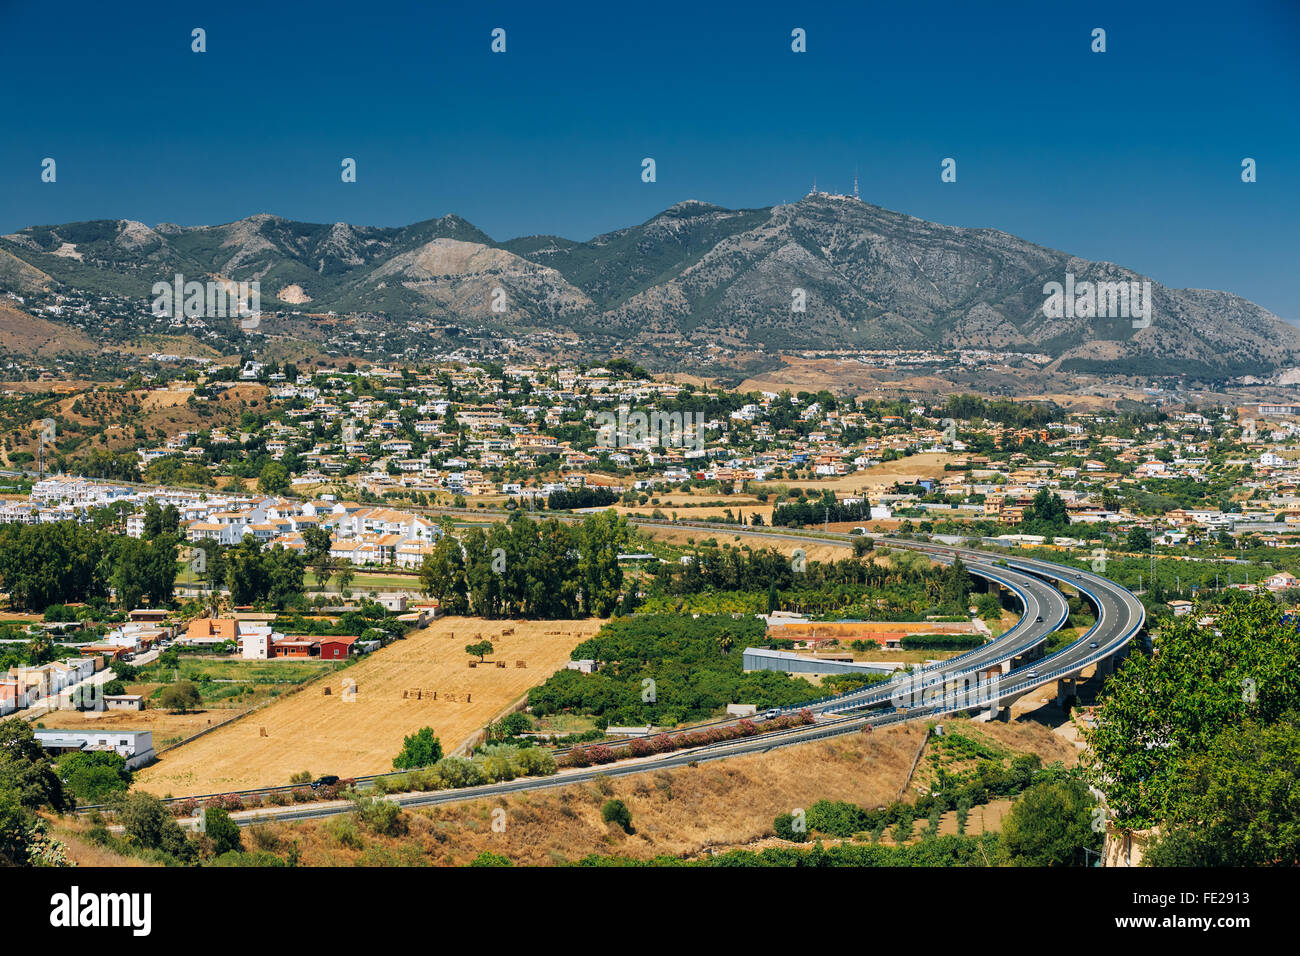 Die Straße in Mijas in Malaga, Andalusien, Spanien. Sommer Stadtbild. Sonniger Tag, Wetter ist gut, blauer Himmel. Stockfoto